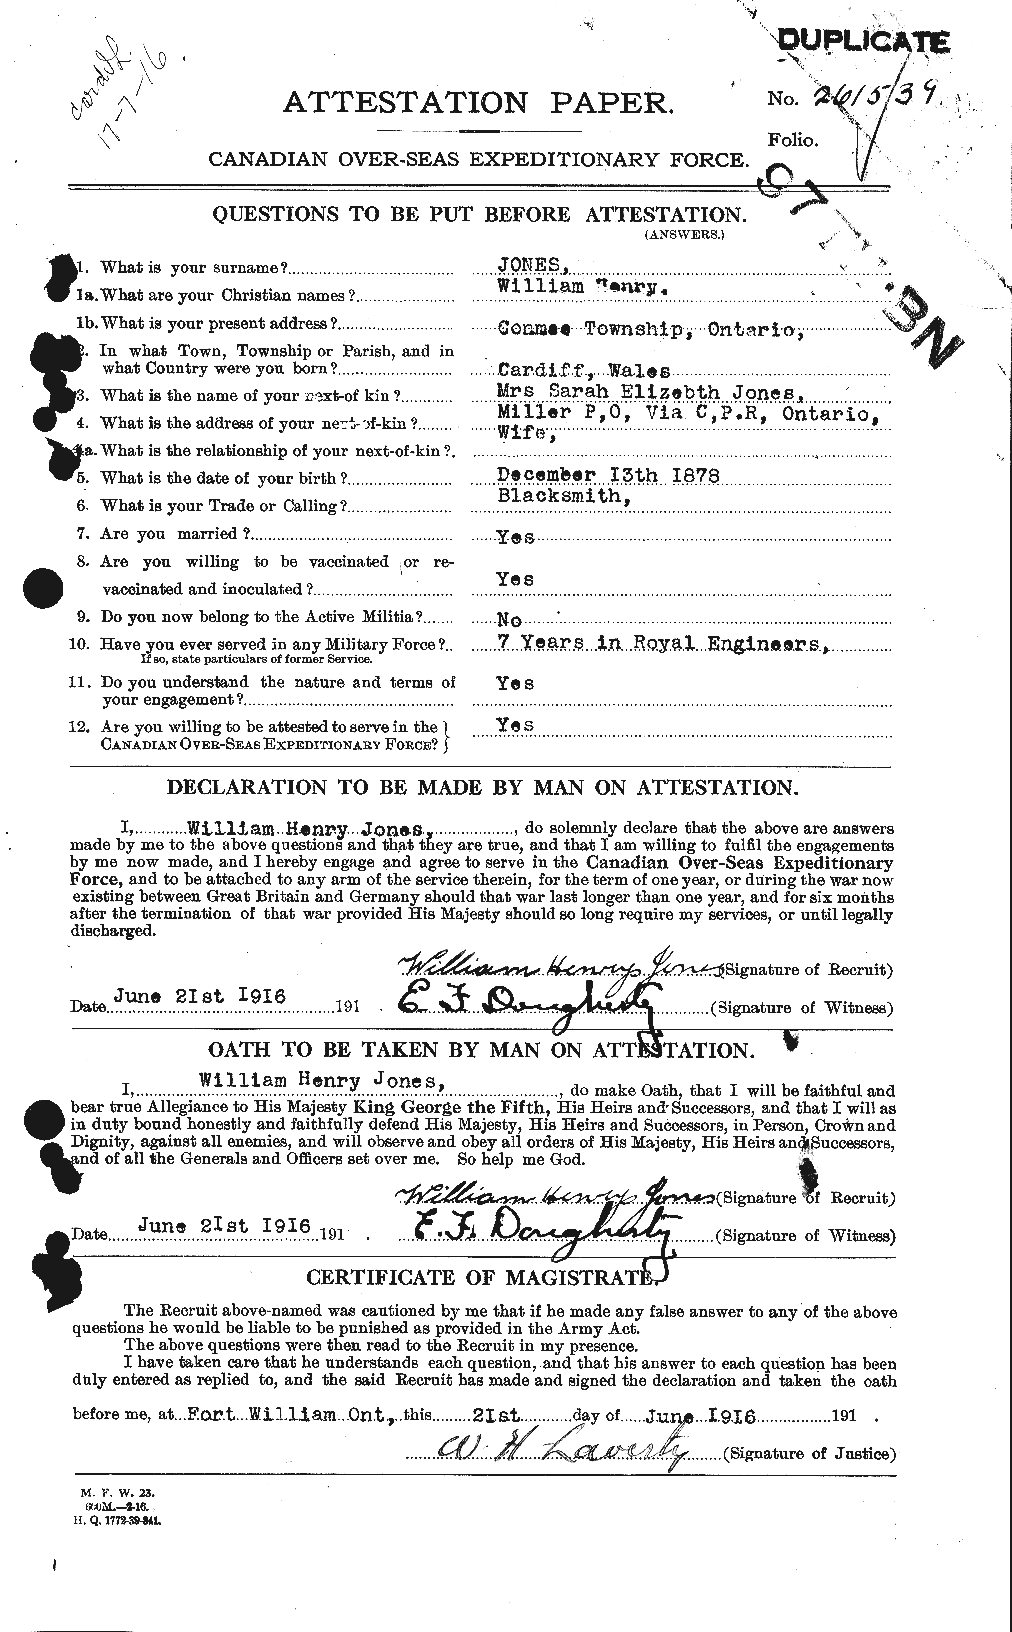 Dossiers du Personnel de la Première Guerre mondiale - CEC 428529a